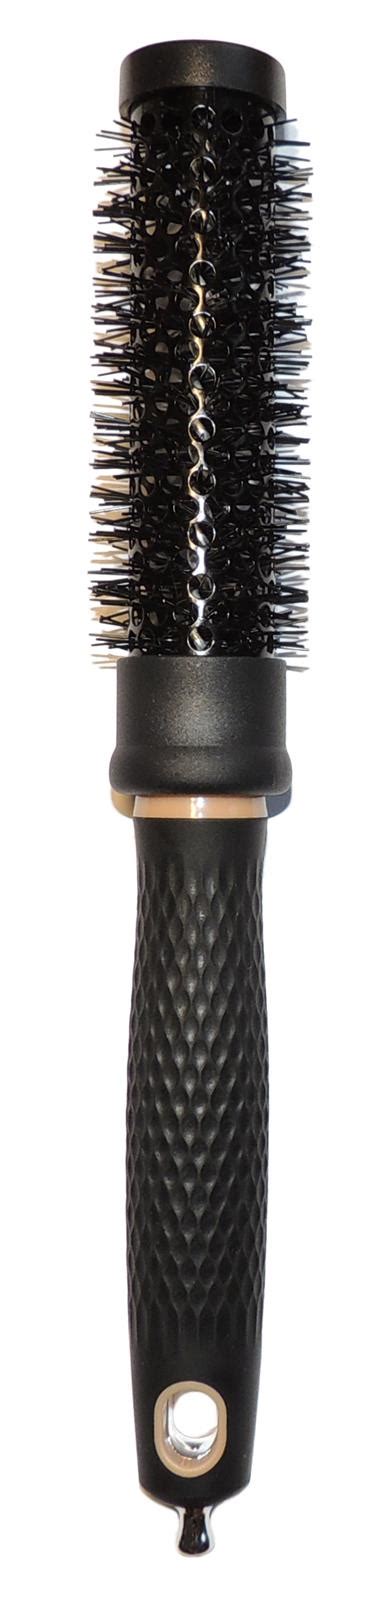 hair brushes szczotka do modelowania włosów 3 5cm średnicy włosy akcesoria do włosów